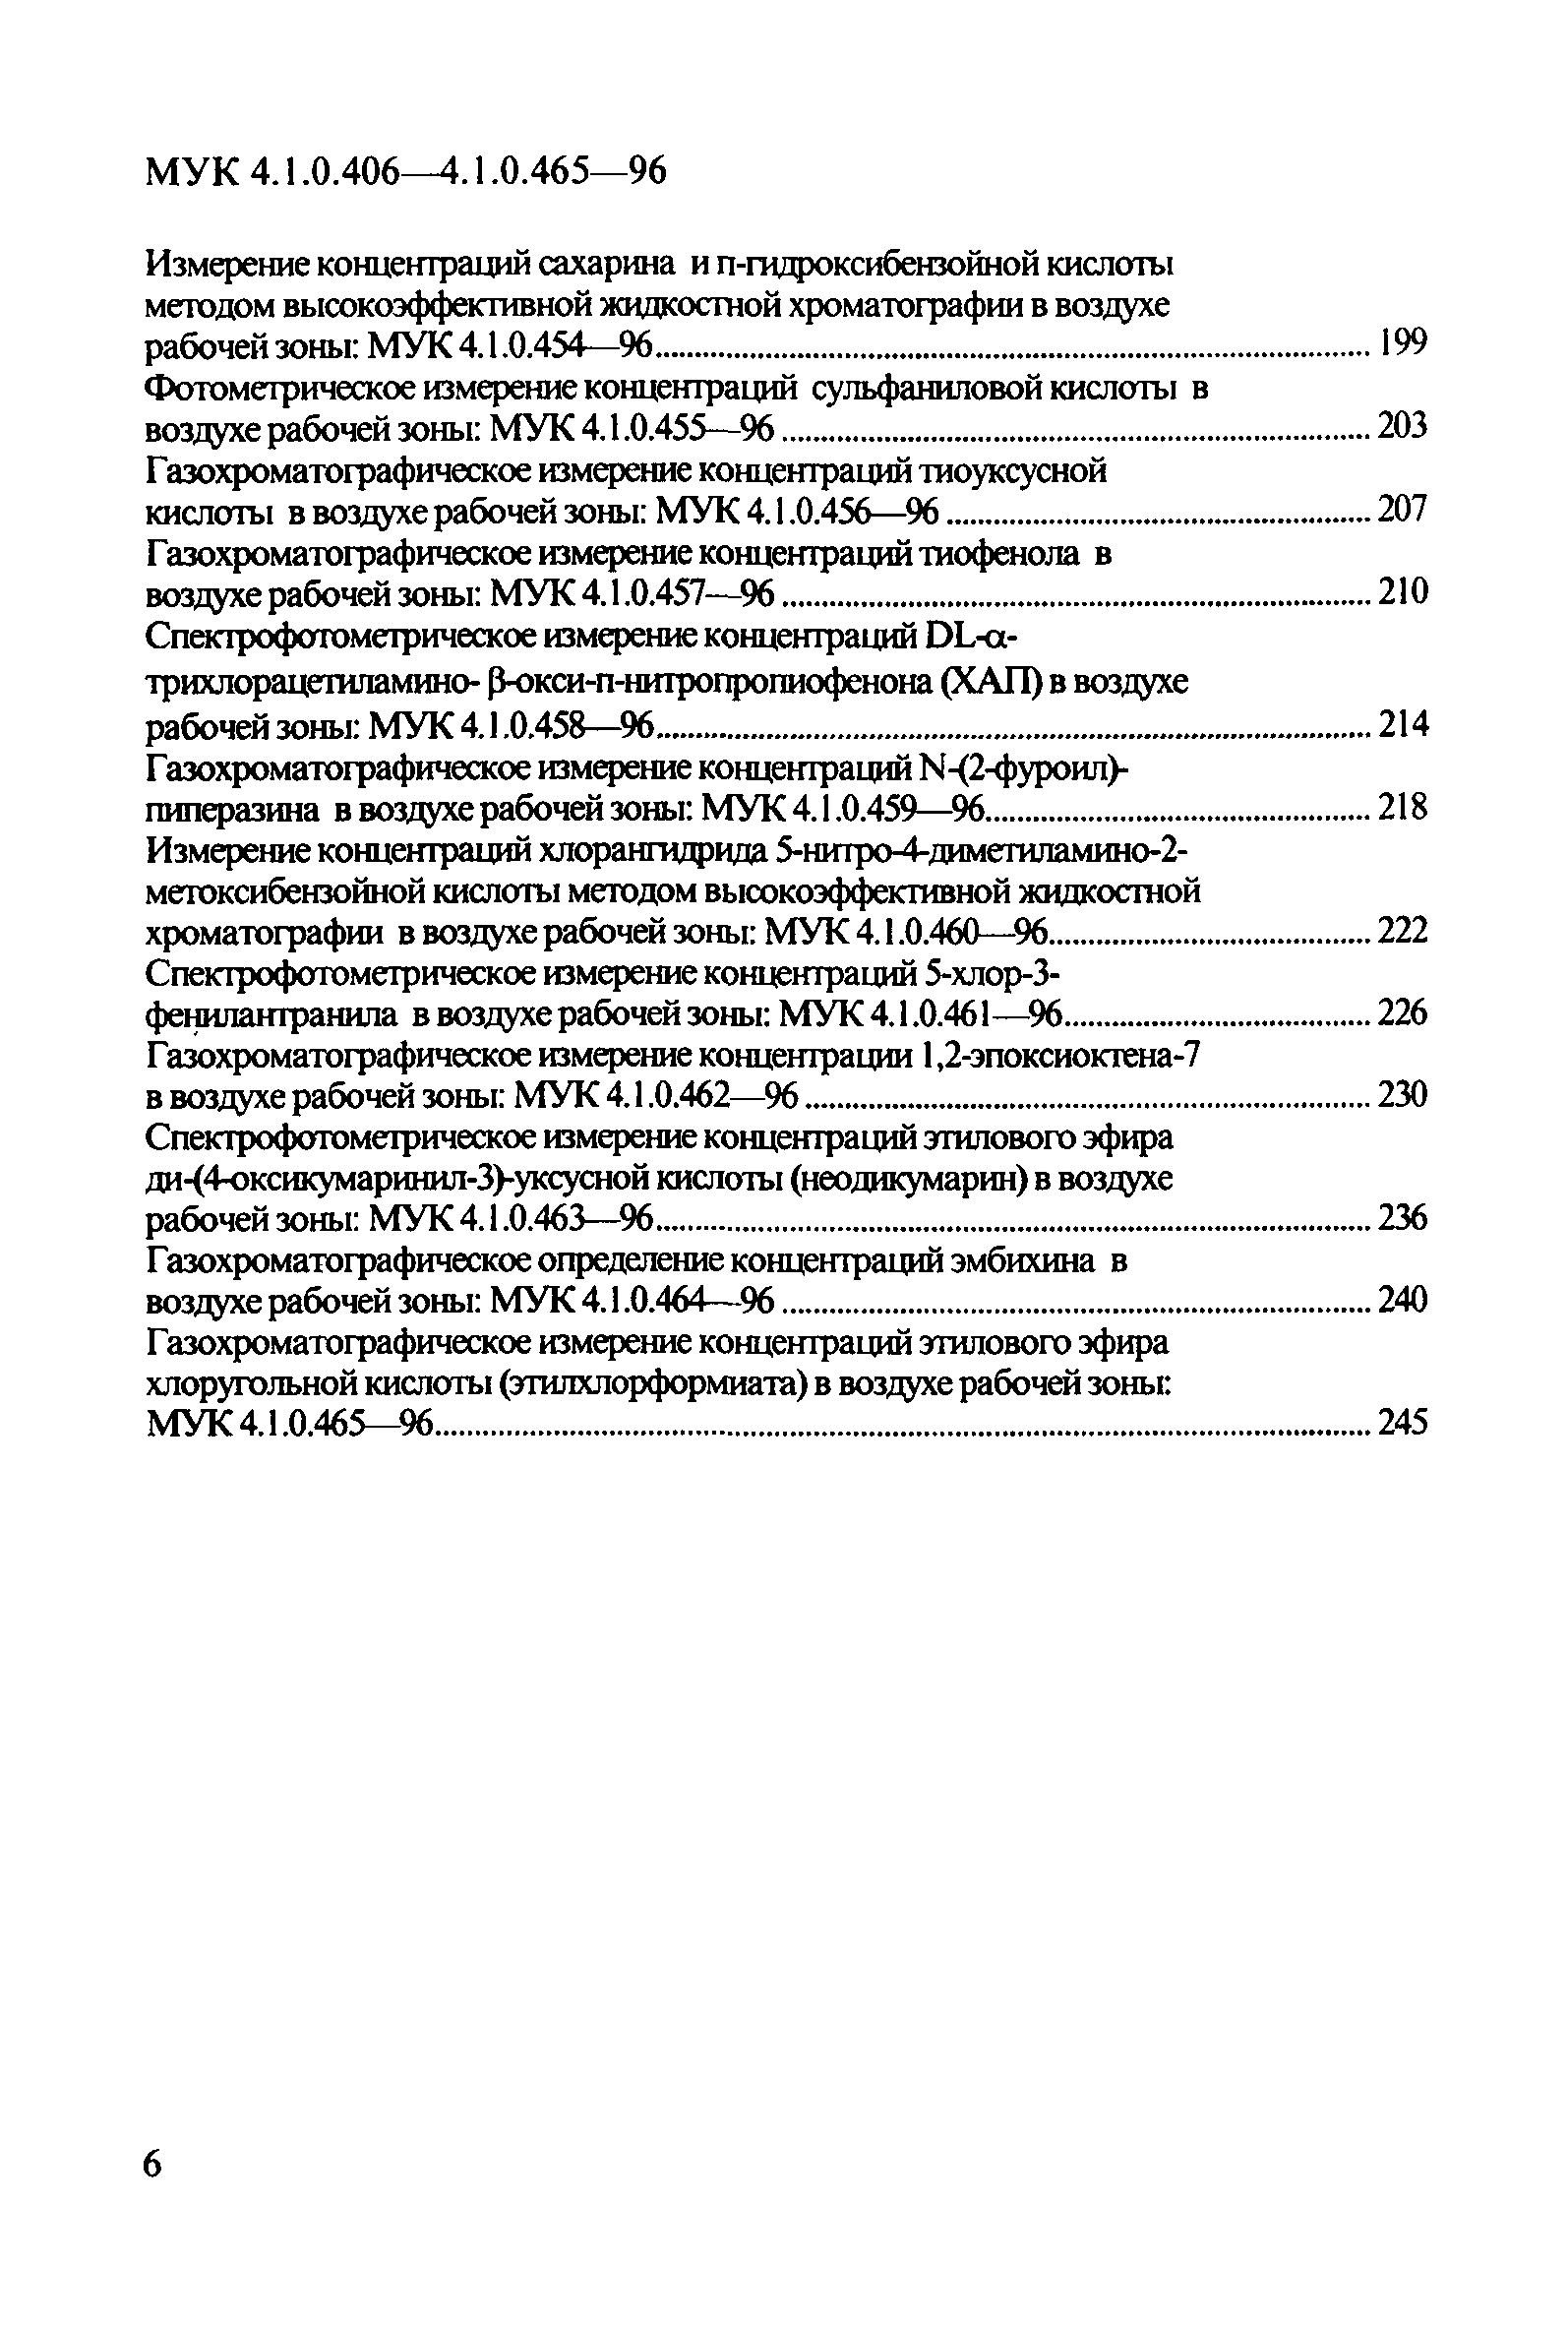 МУК 4.1.0.445-96